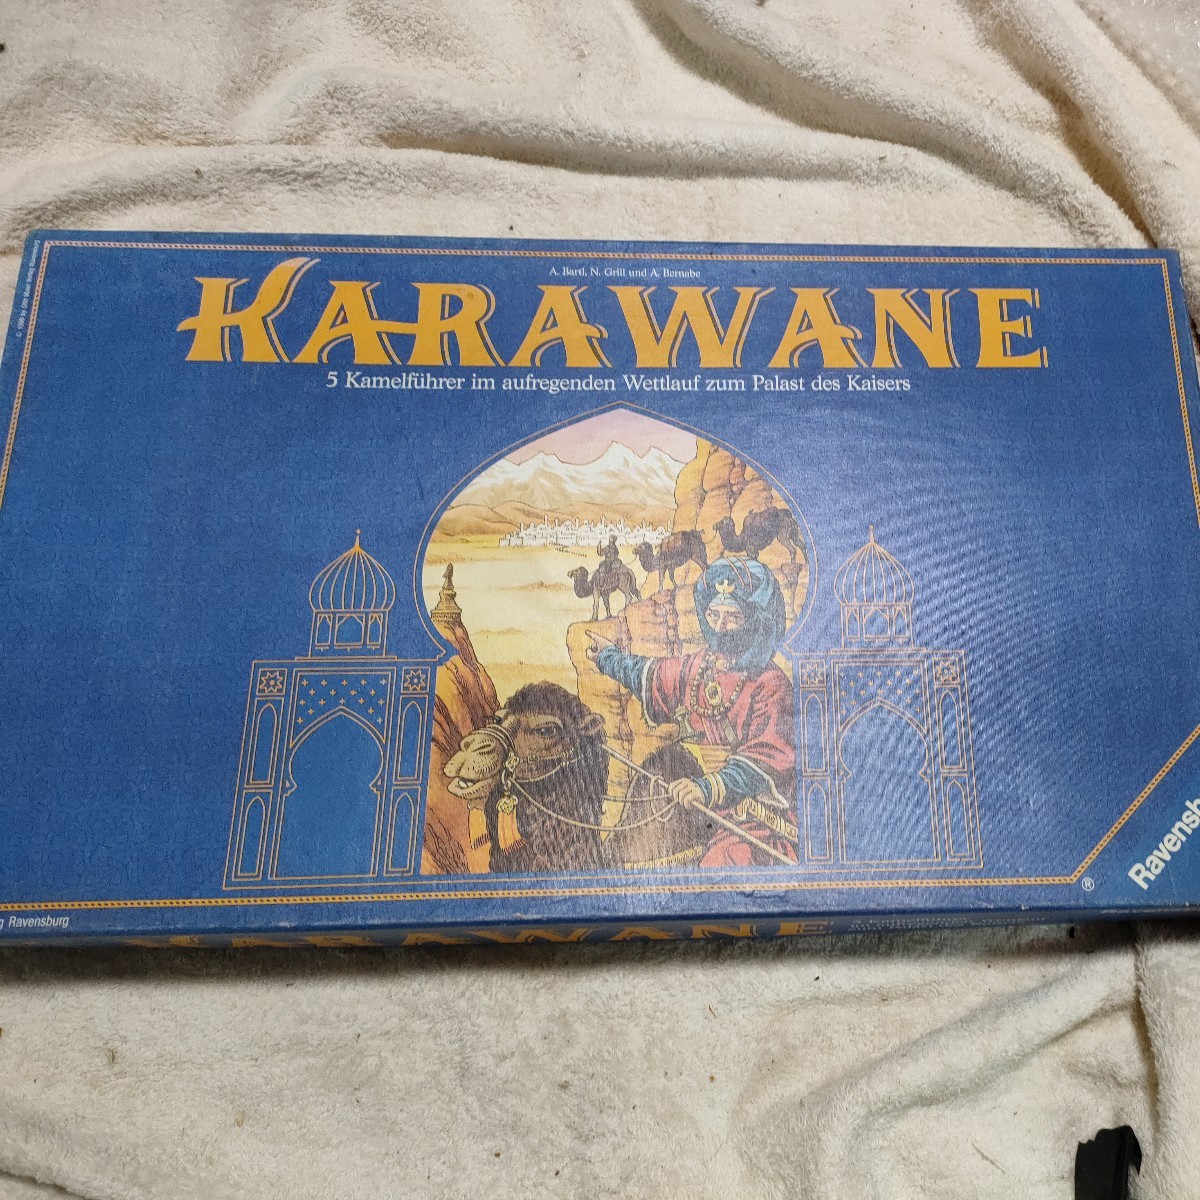 100円処分市 ボードゲーム KARAWANE キャラバン 開封済み新品_画像1